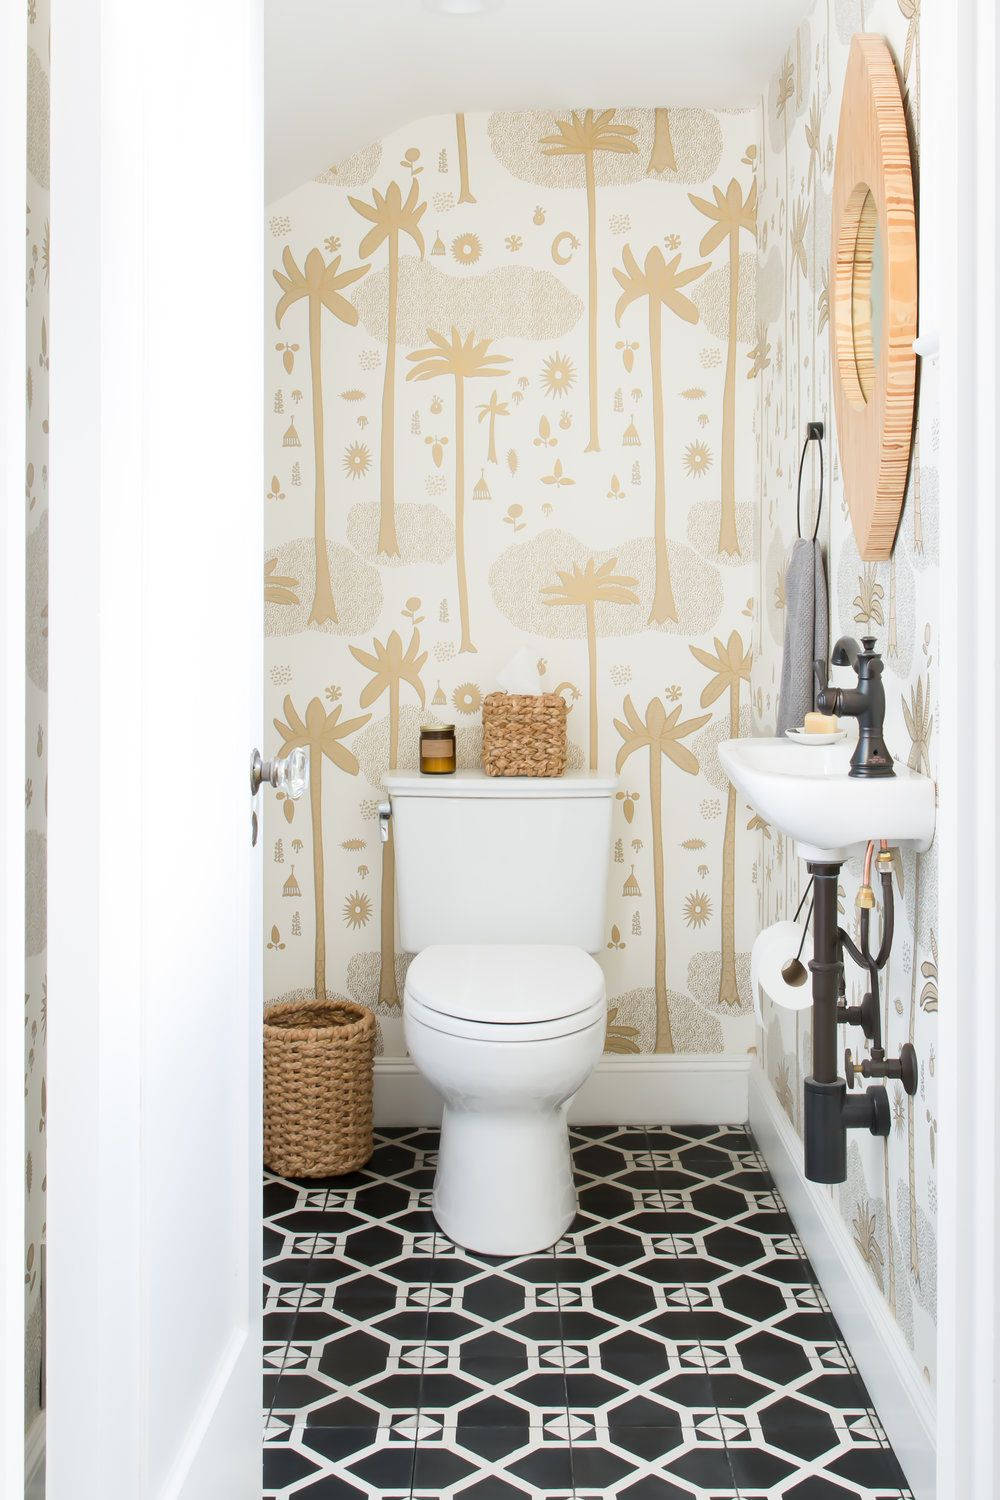 Palm Leaf Bathroom Wallpaper Design Ideas